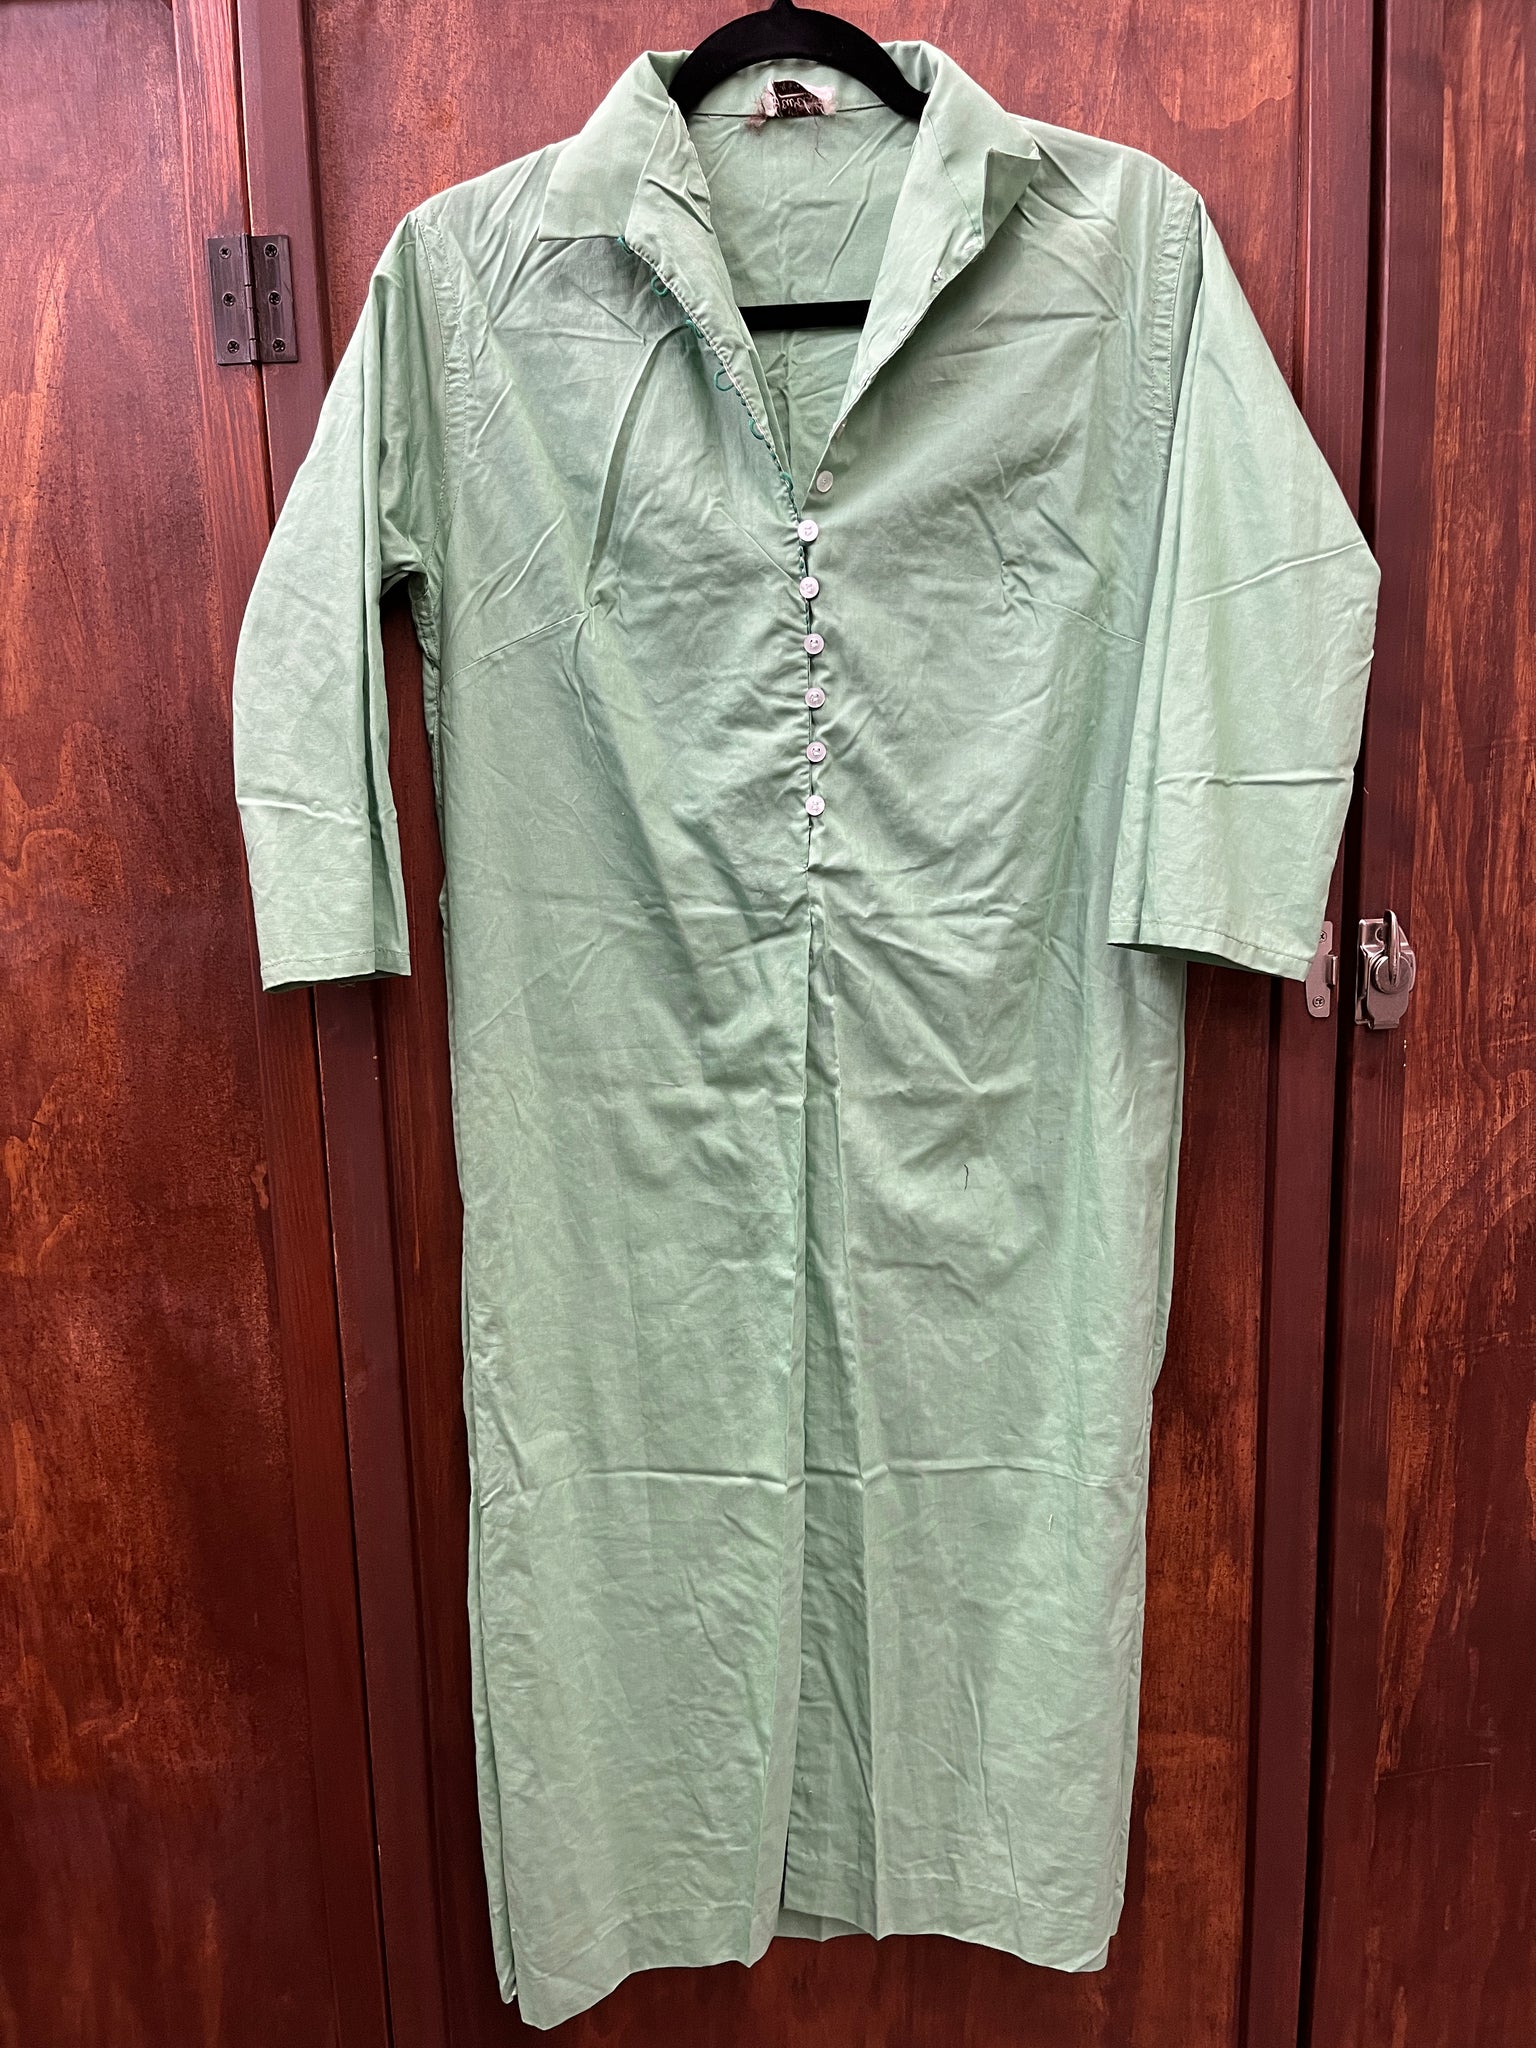 1960s DRESS- Jewel kelly green shirt dress